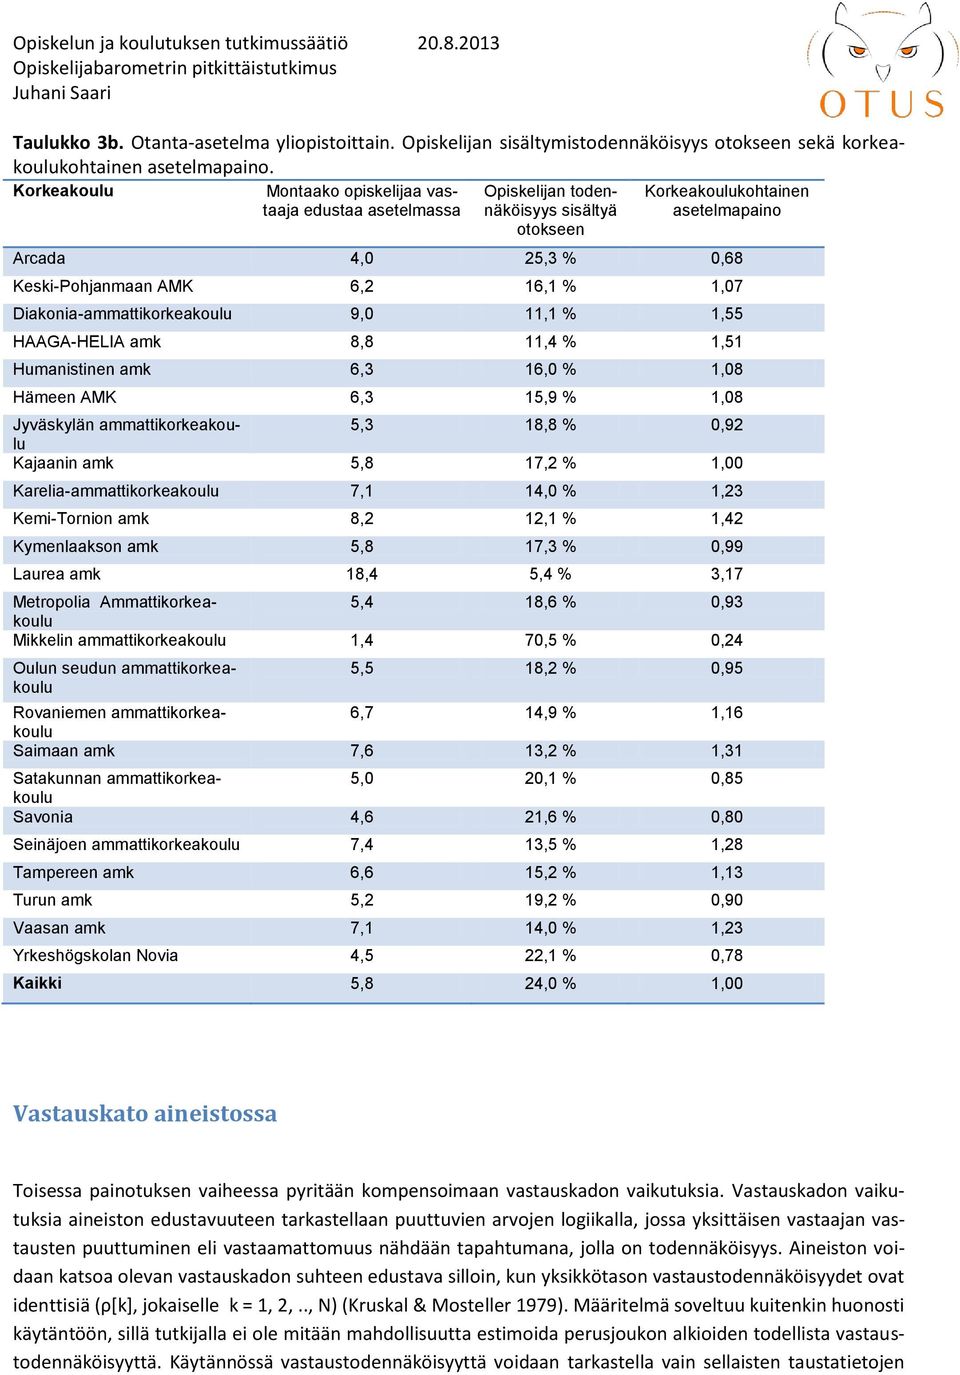 1,07 Diakonia-ammattikorkeakoulu 9,0 11,1 % 1,55 HAAGA-HELIA amk 8,8 11,4 % 1,51 Humanistinen amk 6,3 16,0 % 1,08 Hämeen AMK 6,3 15,9 % 1,08 Jyväskylän ammattikorkeakoulu 5,3 18,8 % 0,92 Kajaanin amk